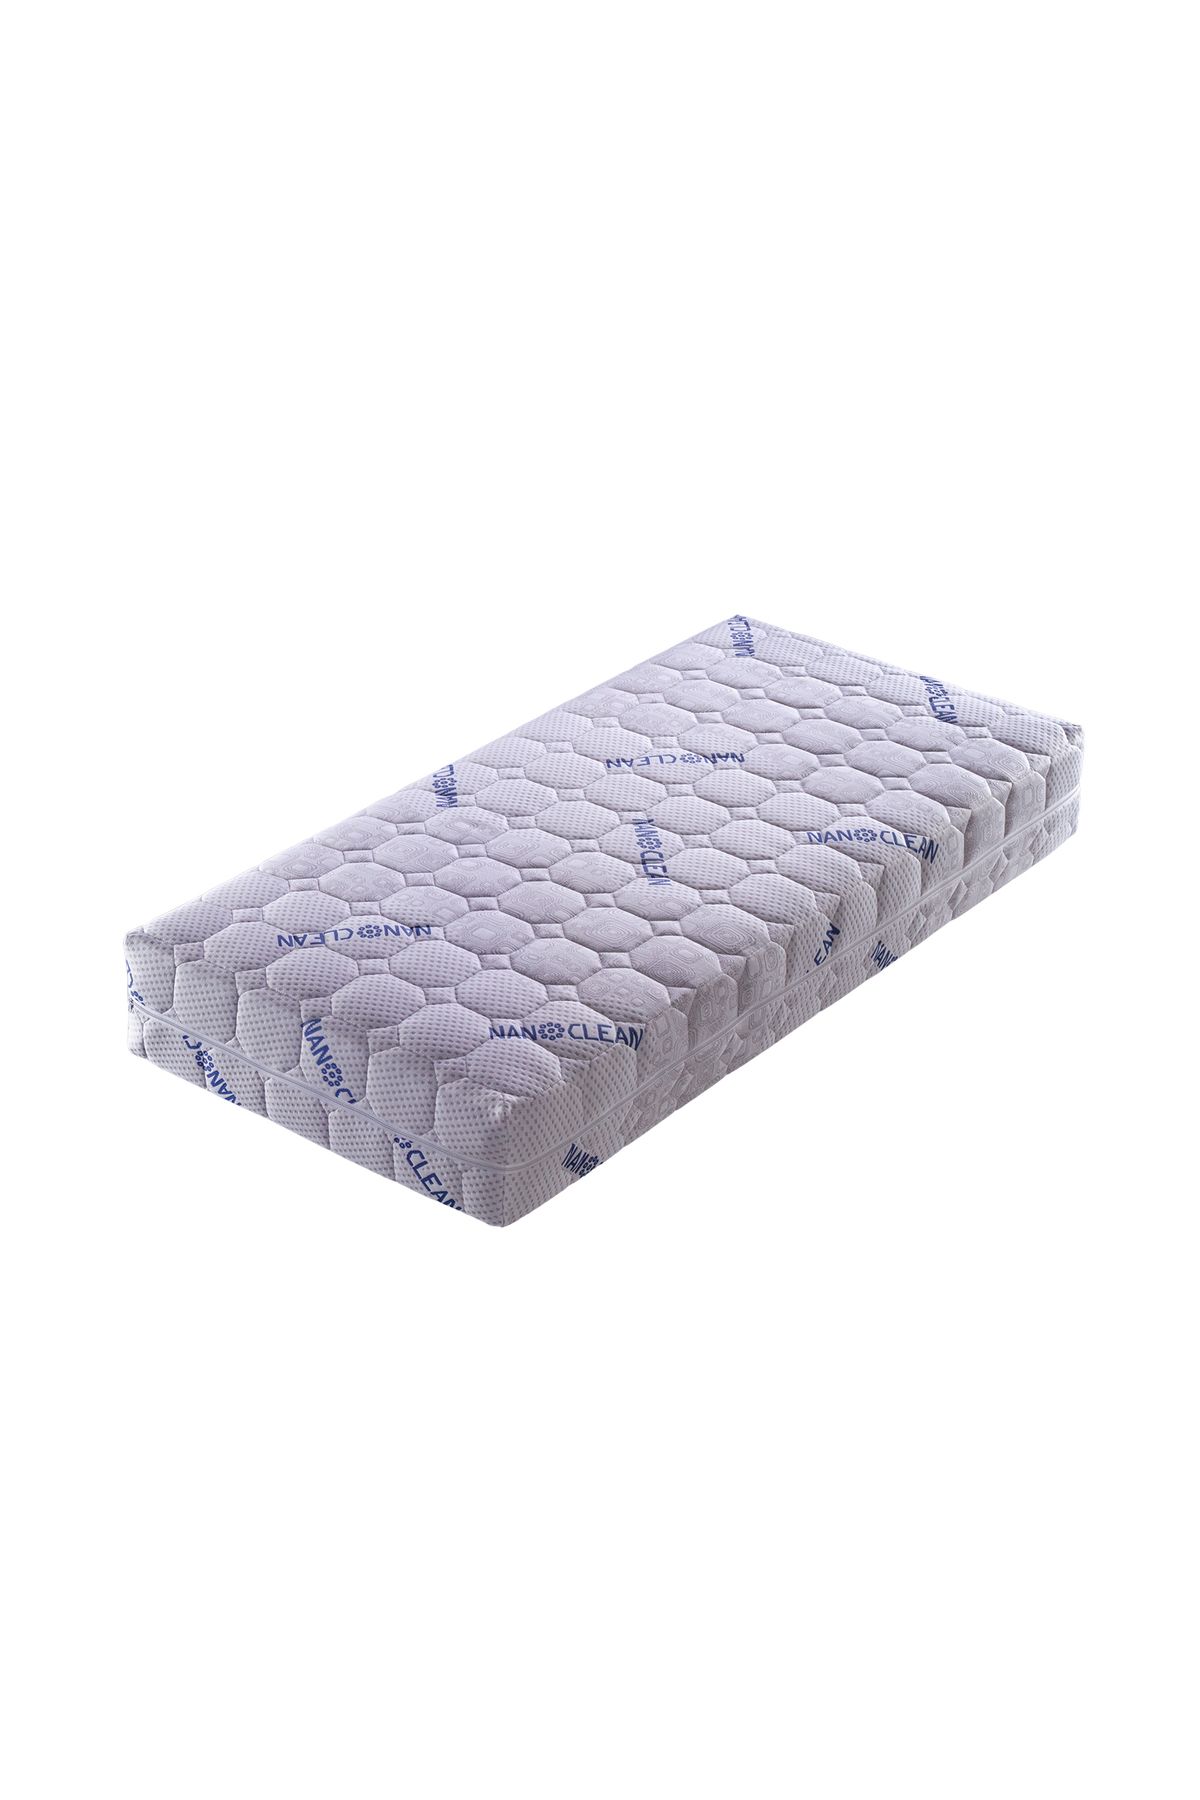 Artex Nano Bebek Yatağı 60x120 Kılıflı 12cm Sünger Yatak Park Yatak Oyun Parkı